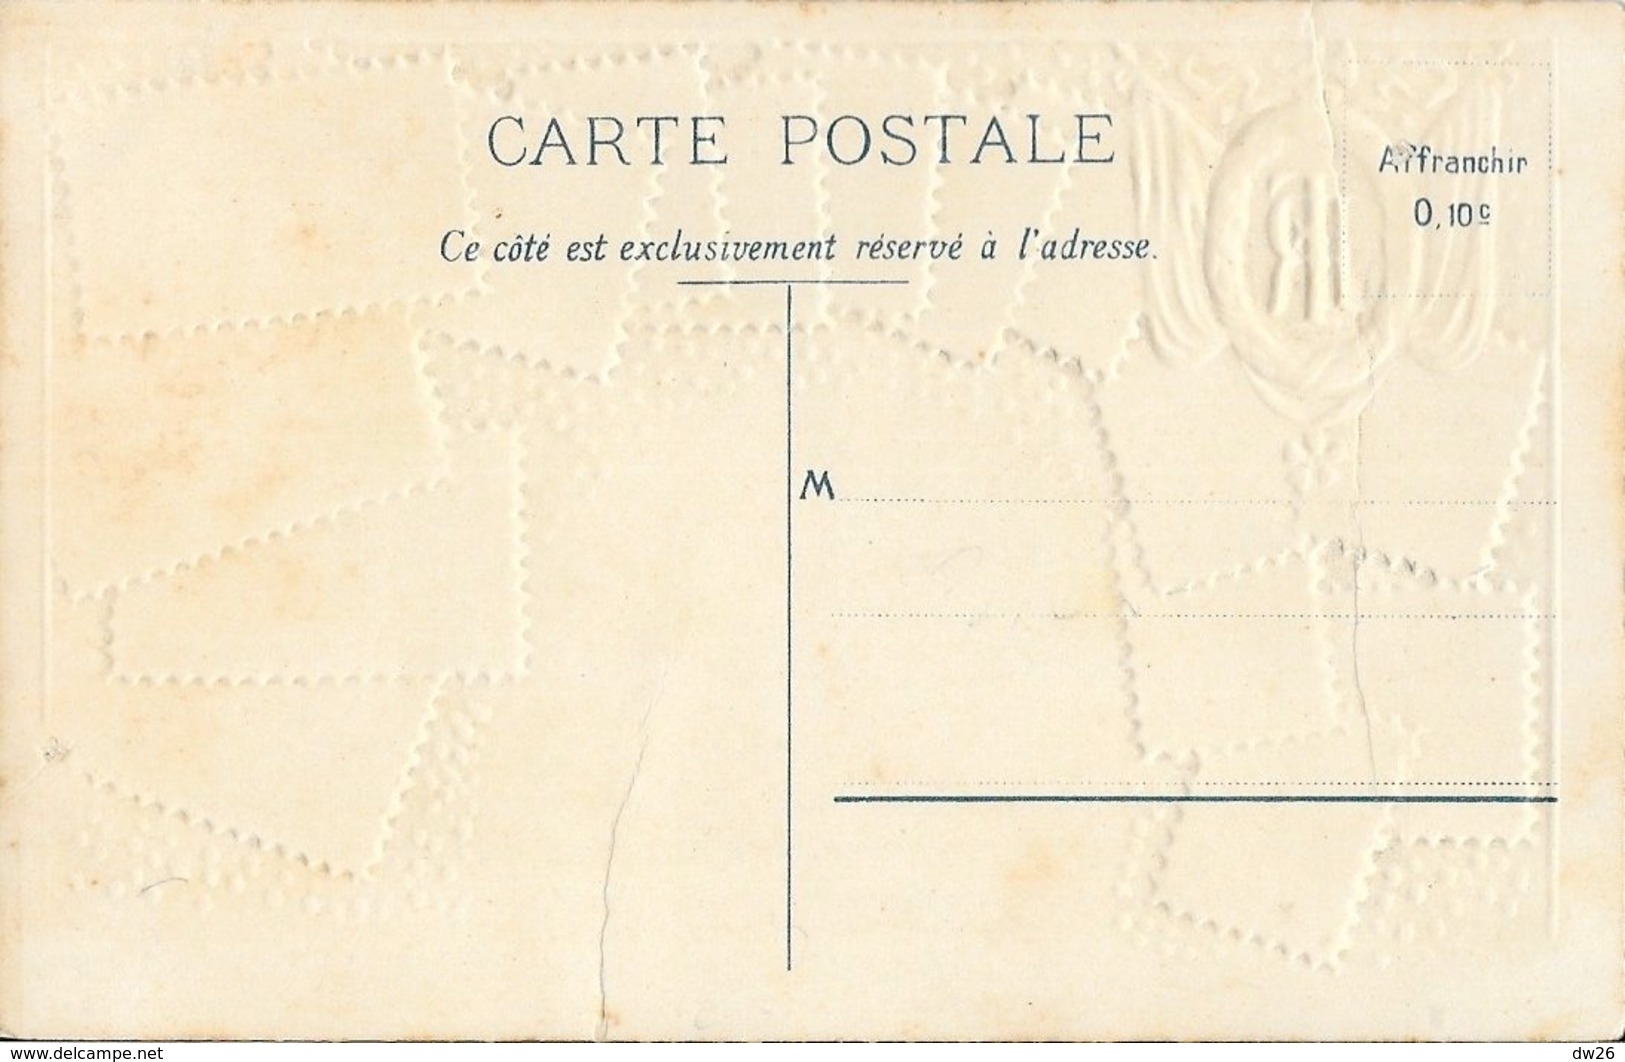 Carte Philatélique D.R.G.M. Non Circulée: Souvenir De France, République Française 1905 - Sellos (representaciones)